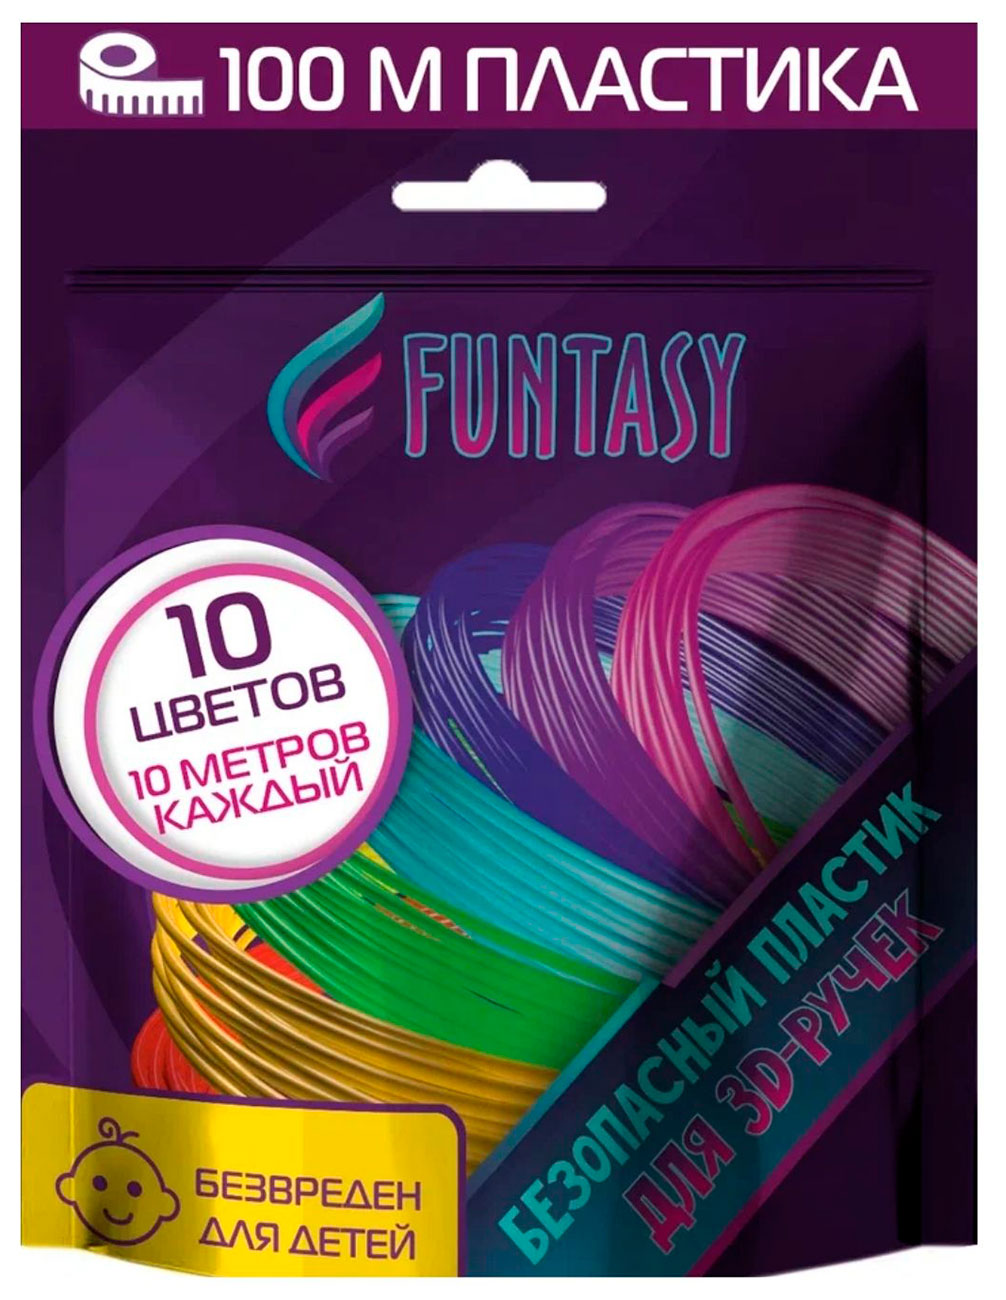 Набор PLA-пластика для 3д ручек Funtasy 10 цветов по 10 метров наборы для творчества funtasy набор pla пластика для 3d ручек 12 цветов по 10 м